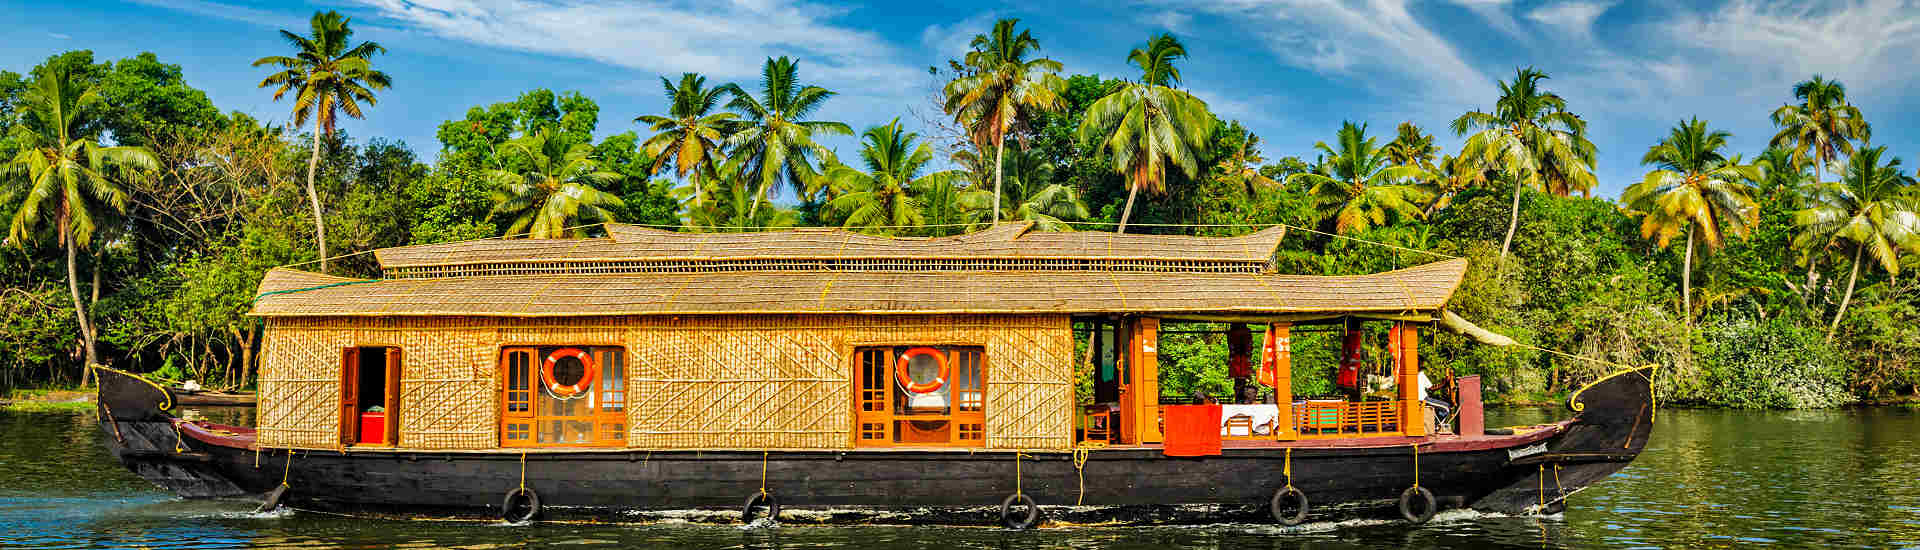 Bild eines Kerala Backwaters Hausboots in Indien - Entdecken Sie die natürliche Schönheit und Ruhe der Kerala Backwaters